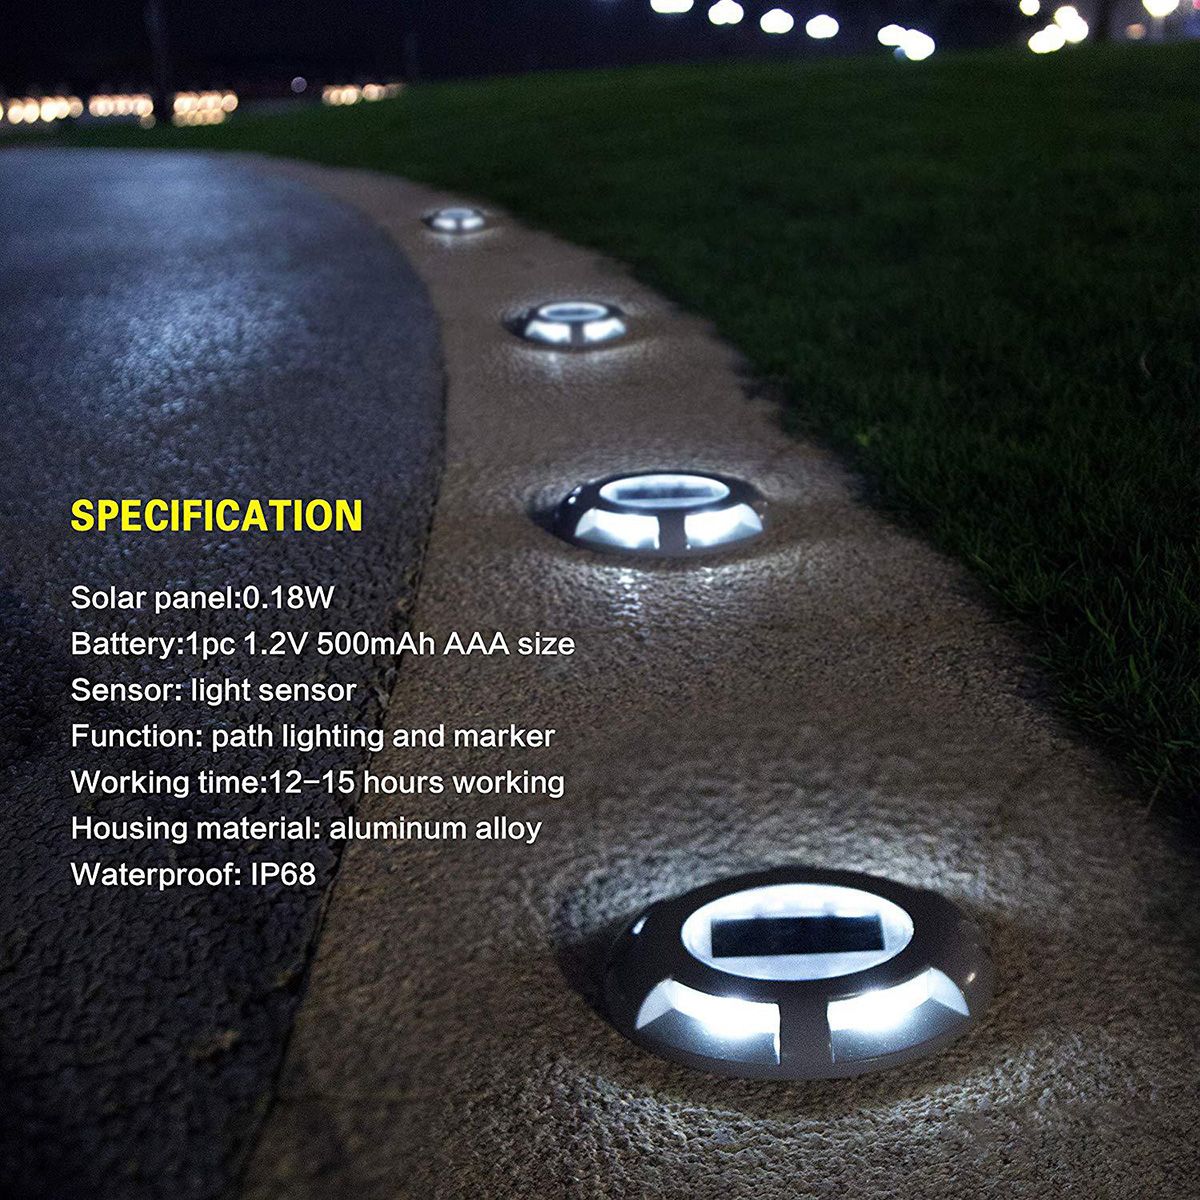 LED-Solar-Waterproof-Ground-Lamp-Outdoor-Pathway-Garden-Courtyard-Corridor-Buried-Light-1626796